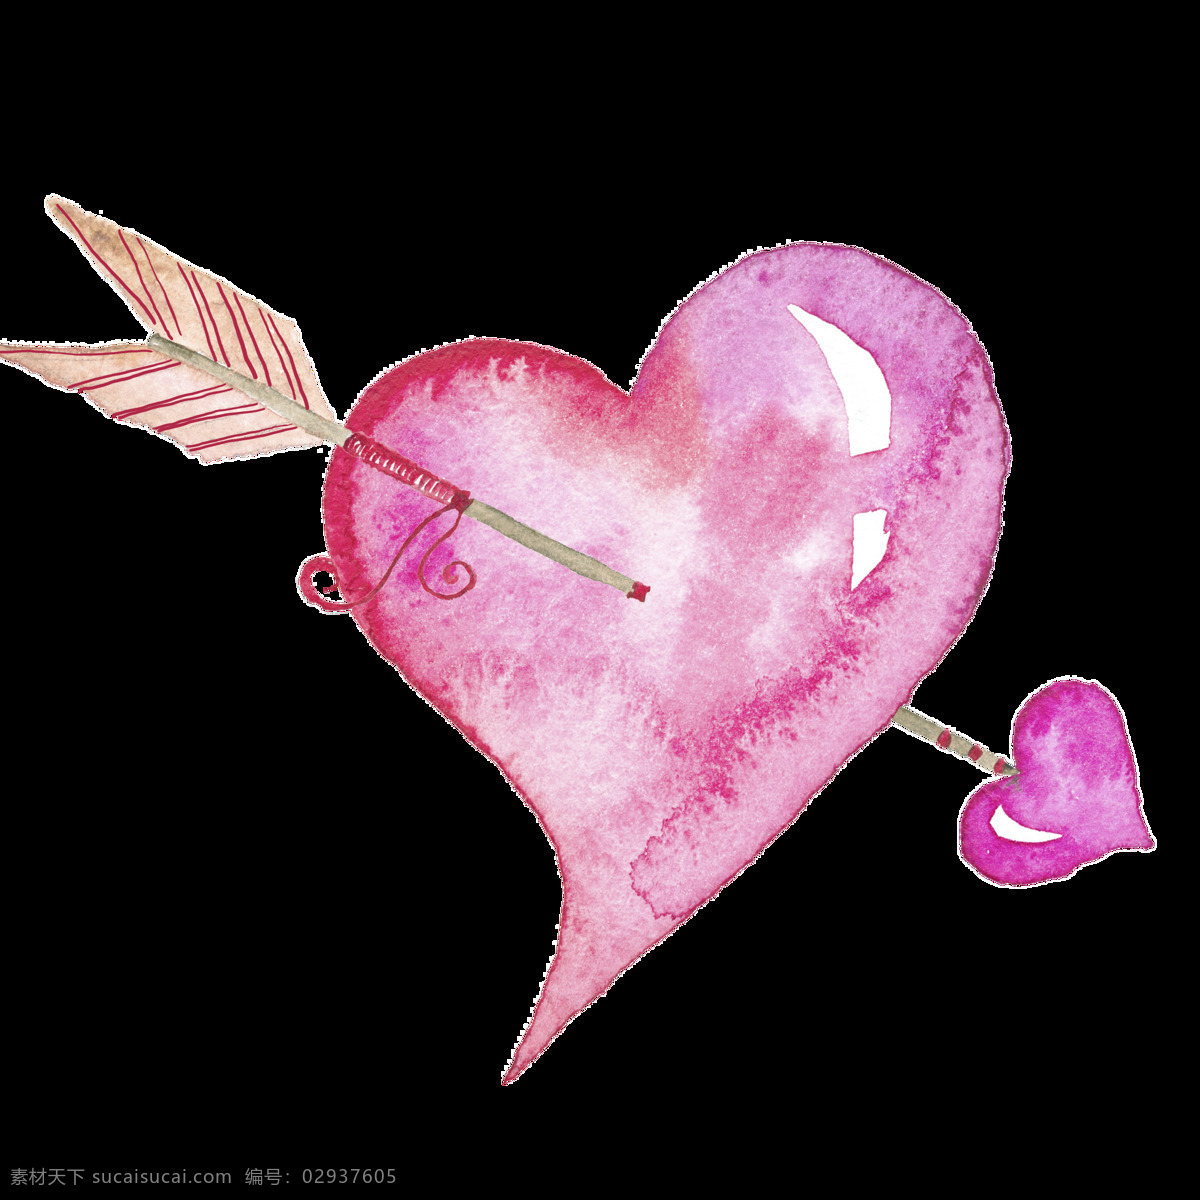 情人节 卡片 装饰 透明 爱心 粉色 箭头 矢量素材 设计素材